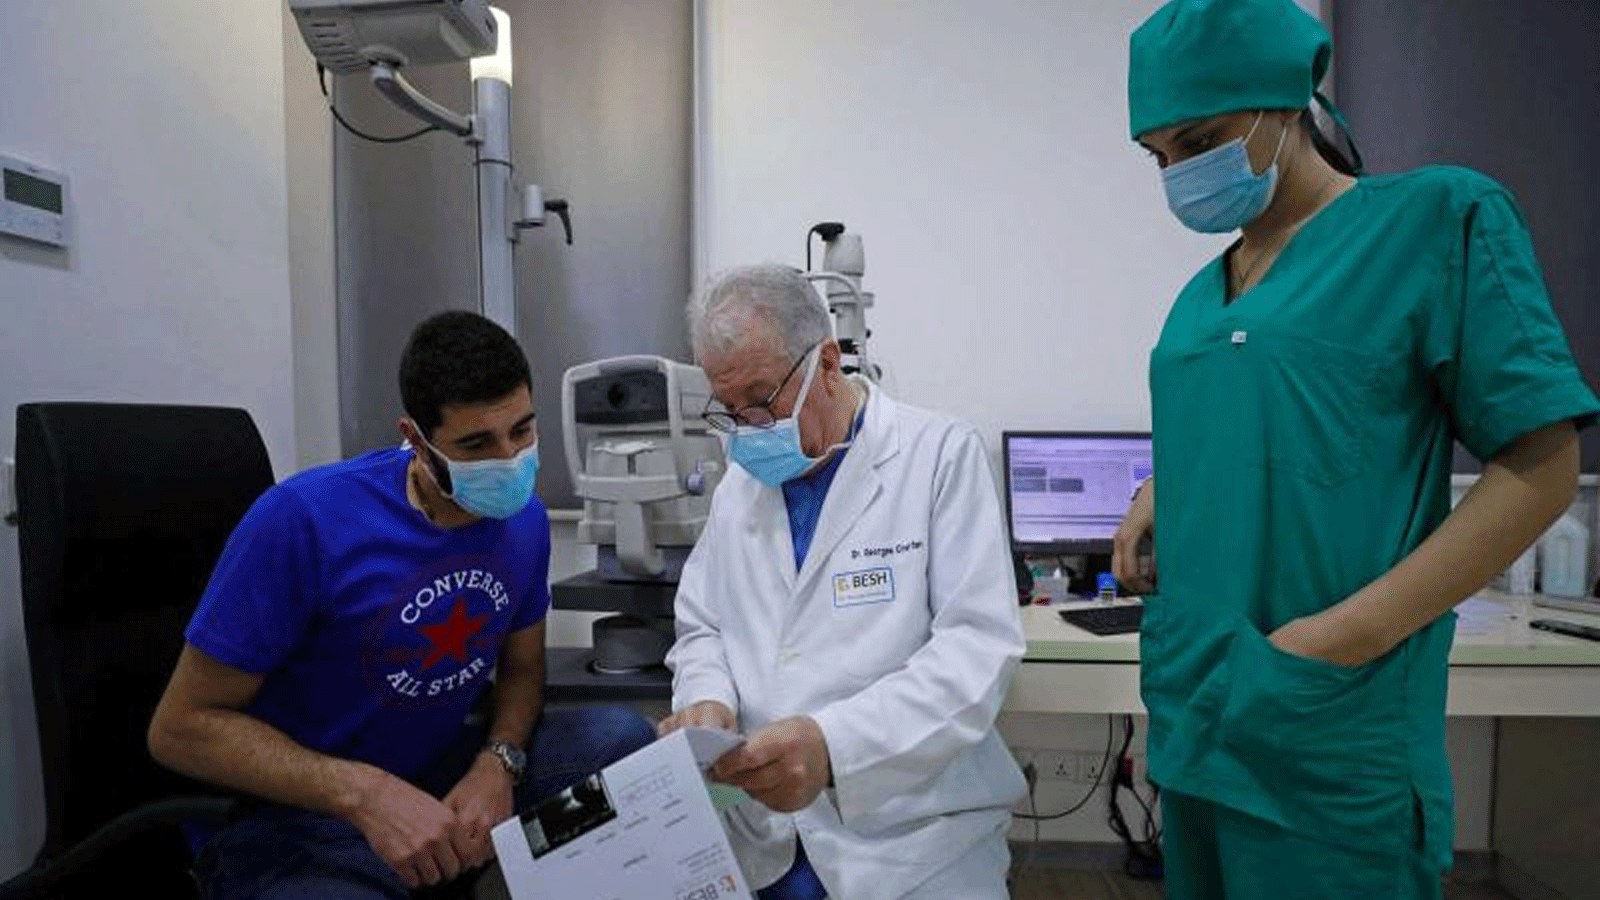  طبيب العيون اللبناني جورج شرفان يفحص مريضاً في مستشفى بيروت التخصصي للعيون والأنف والأذن والحنجرة 